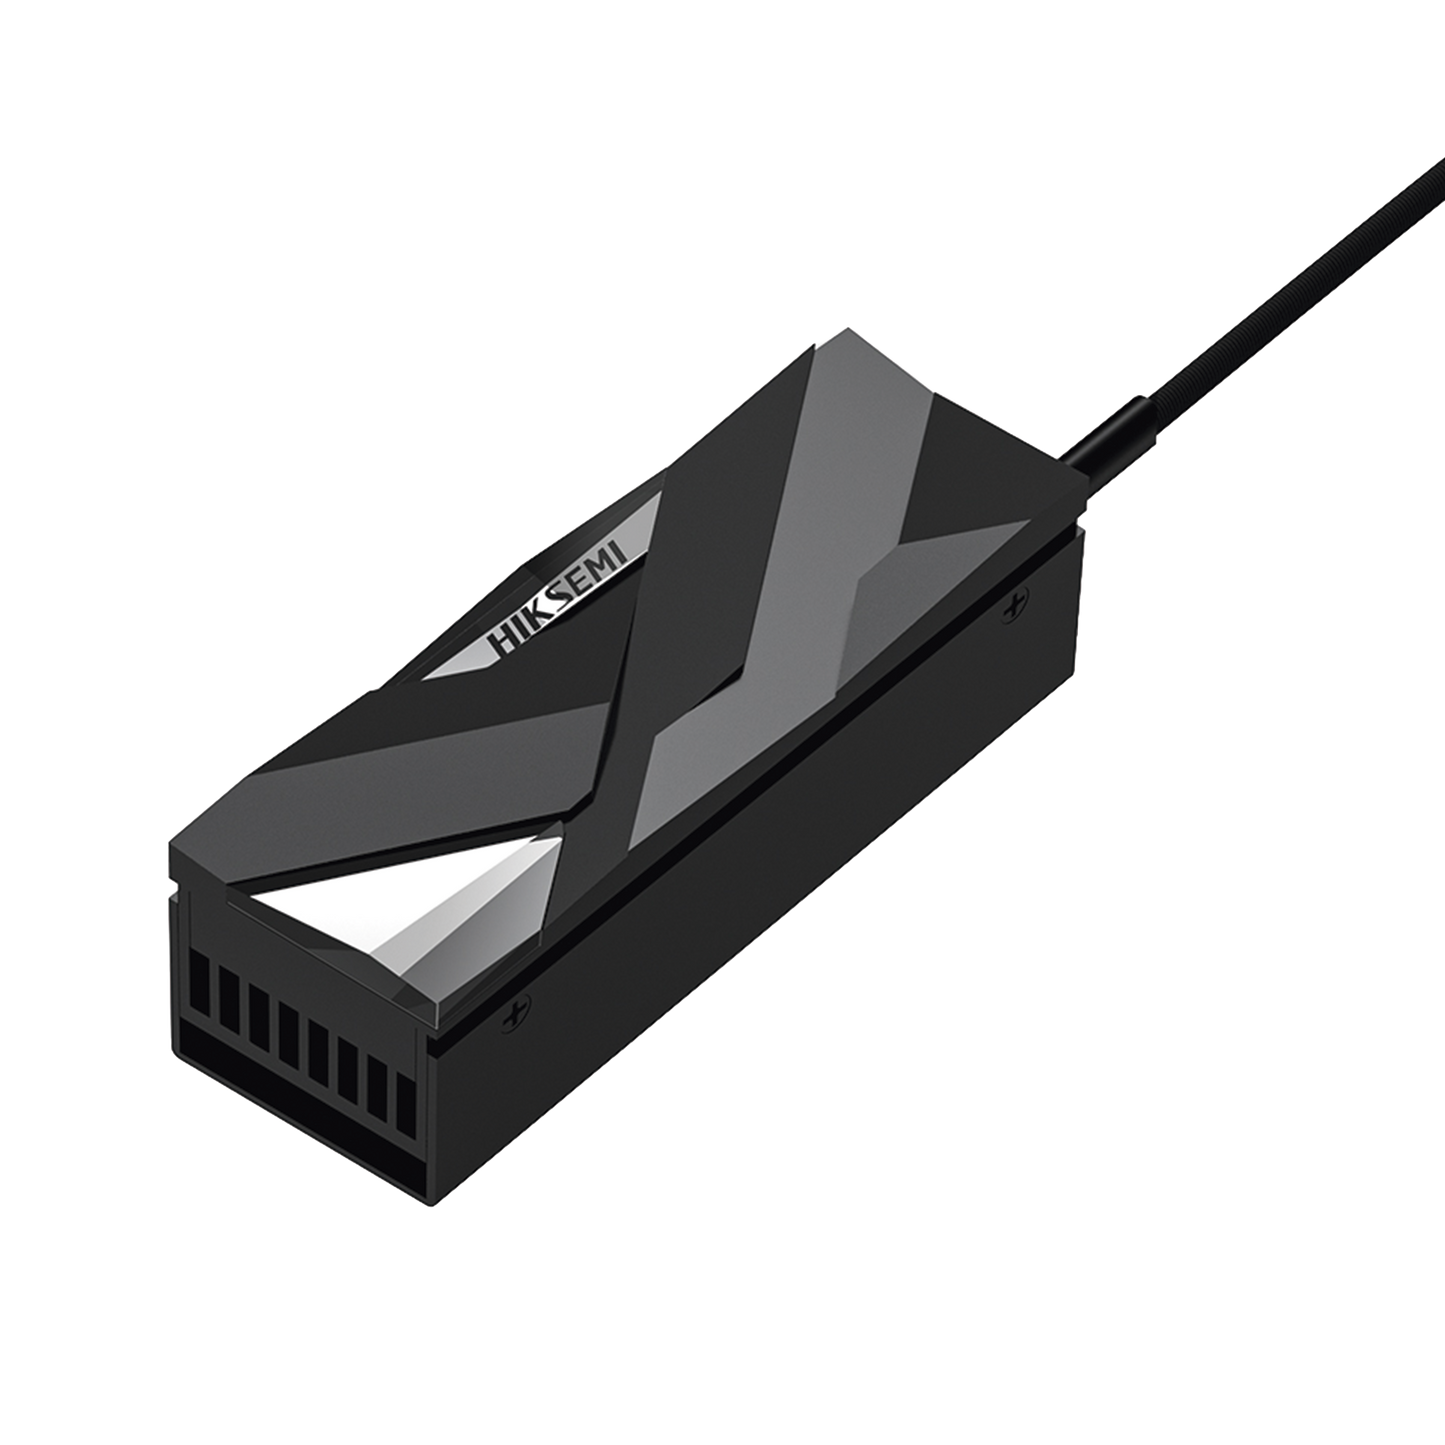 Disipador de calor Activo para SSD M.2 / Aleación de Aluminio / Fácil de Instalación / Ideal para PC de Escritorio